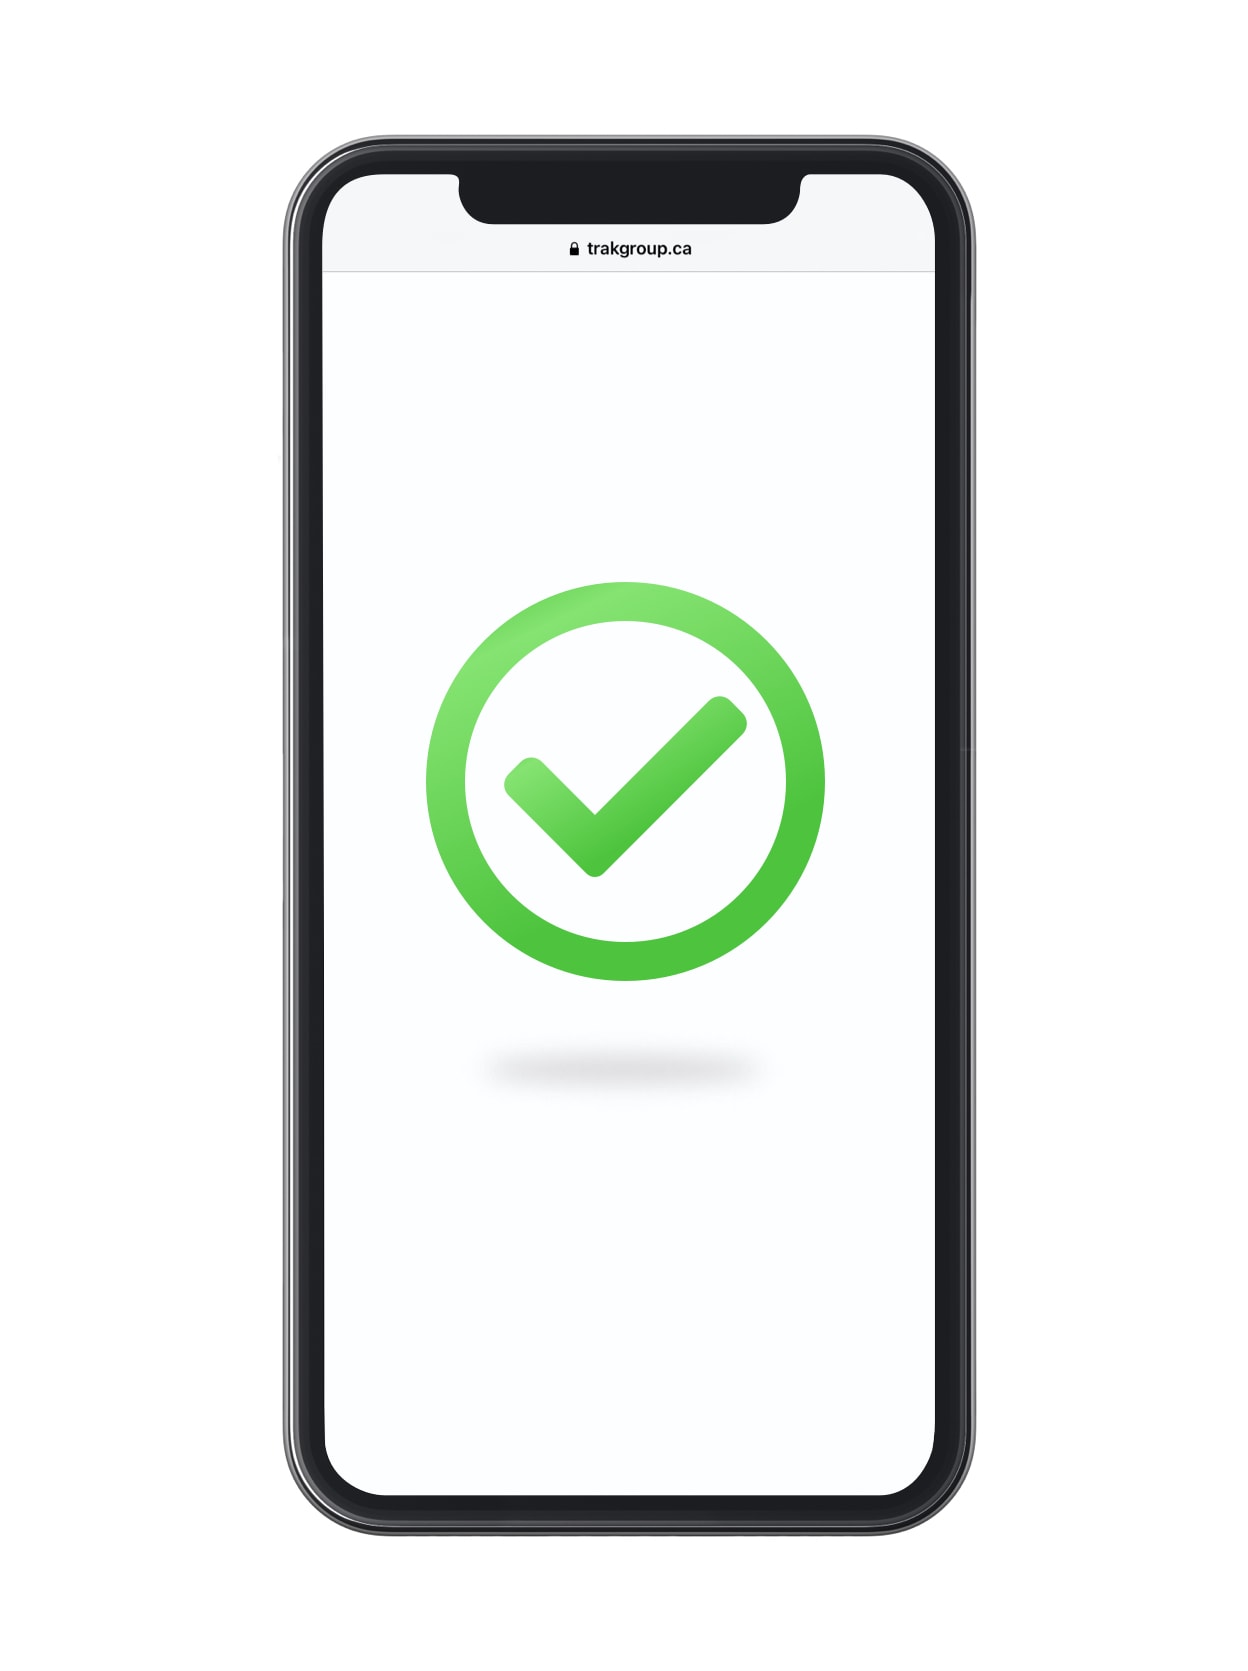 Icone de validation en vert sur une téléphone au fond blanc